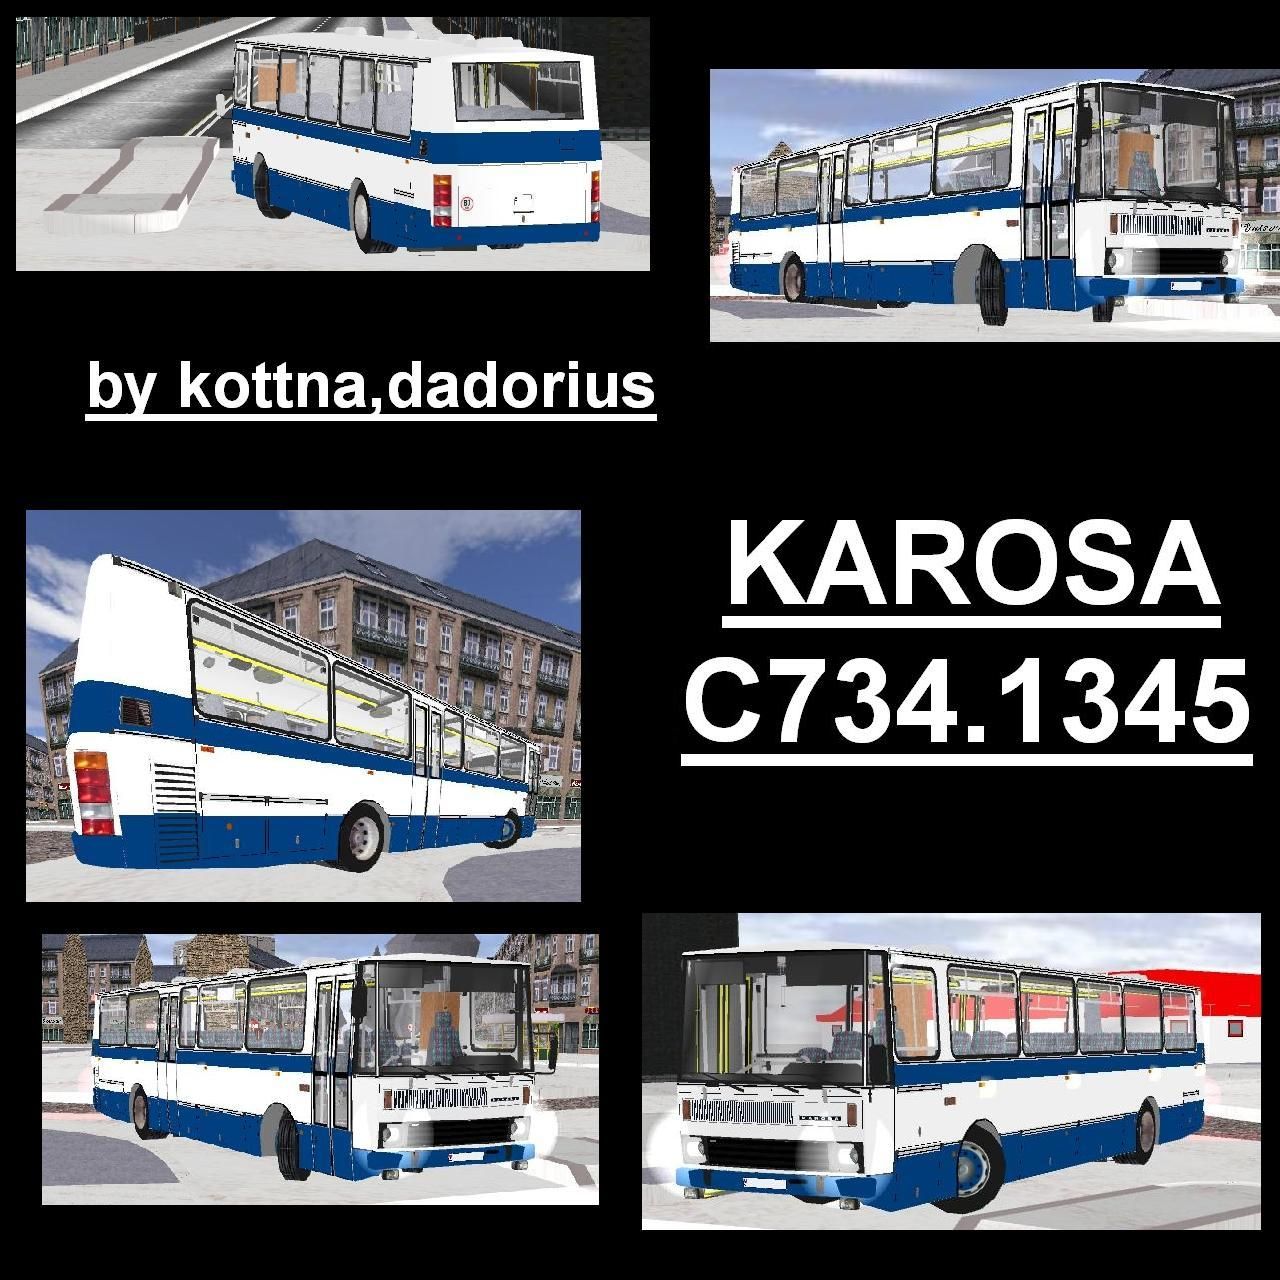 Karosa C734.1345